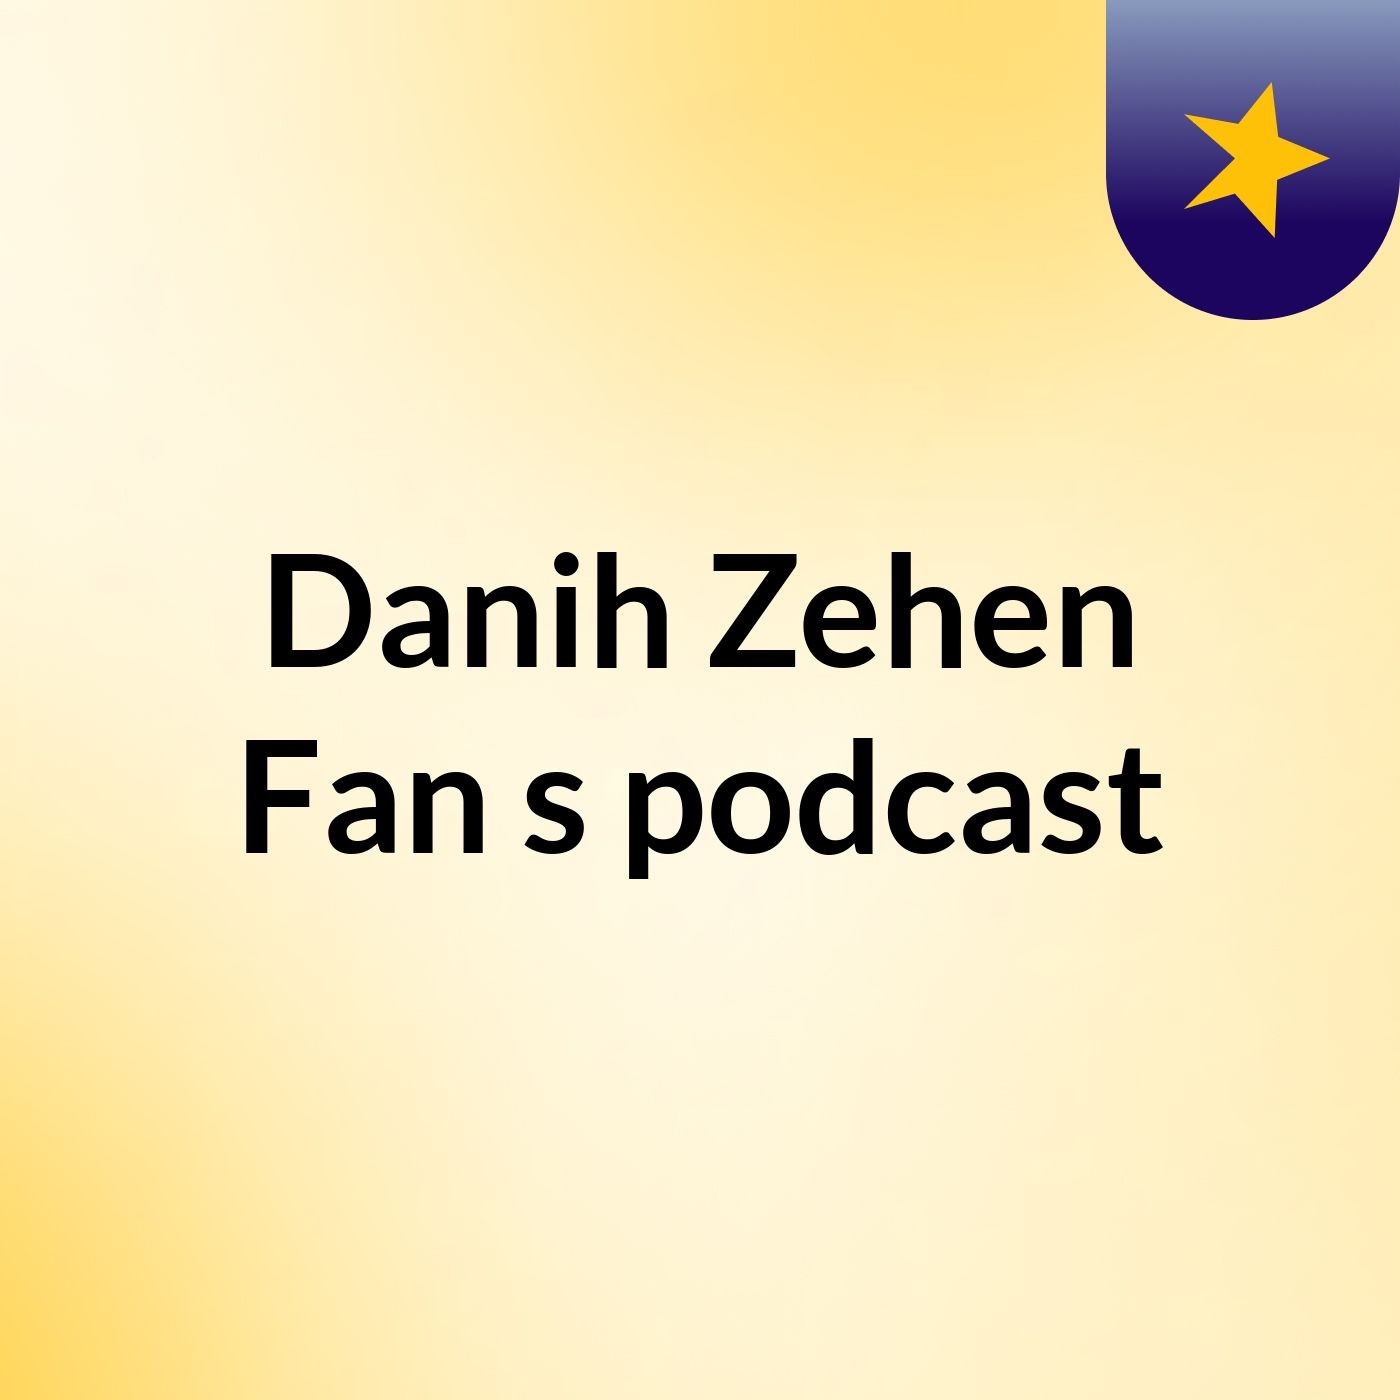 Episode 8 - Danih Zehen Fan's podcast